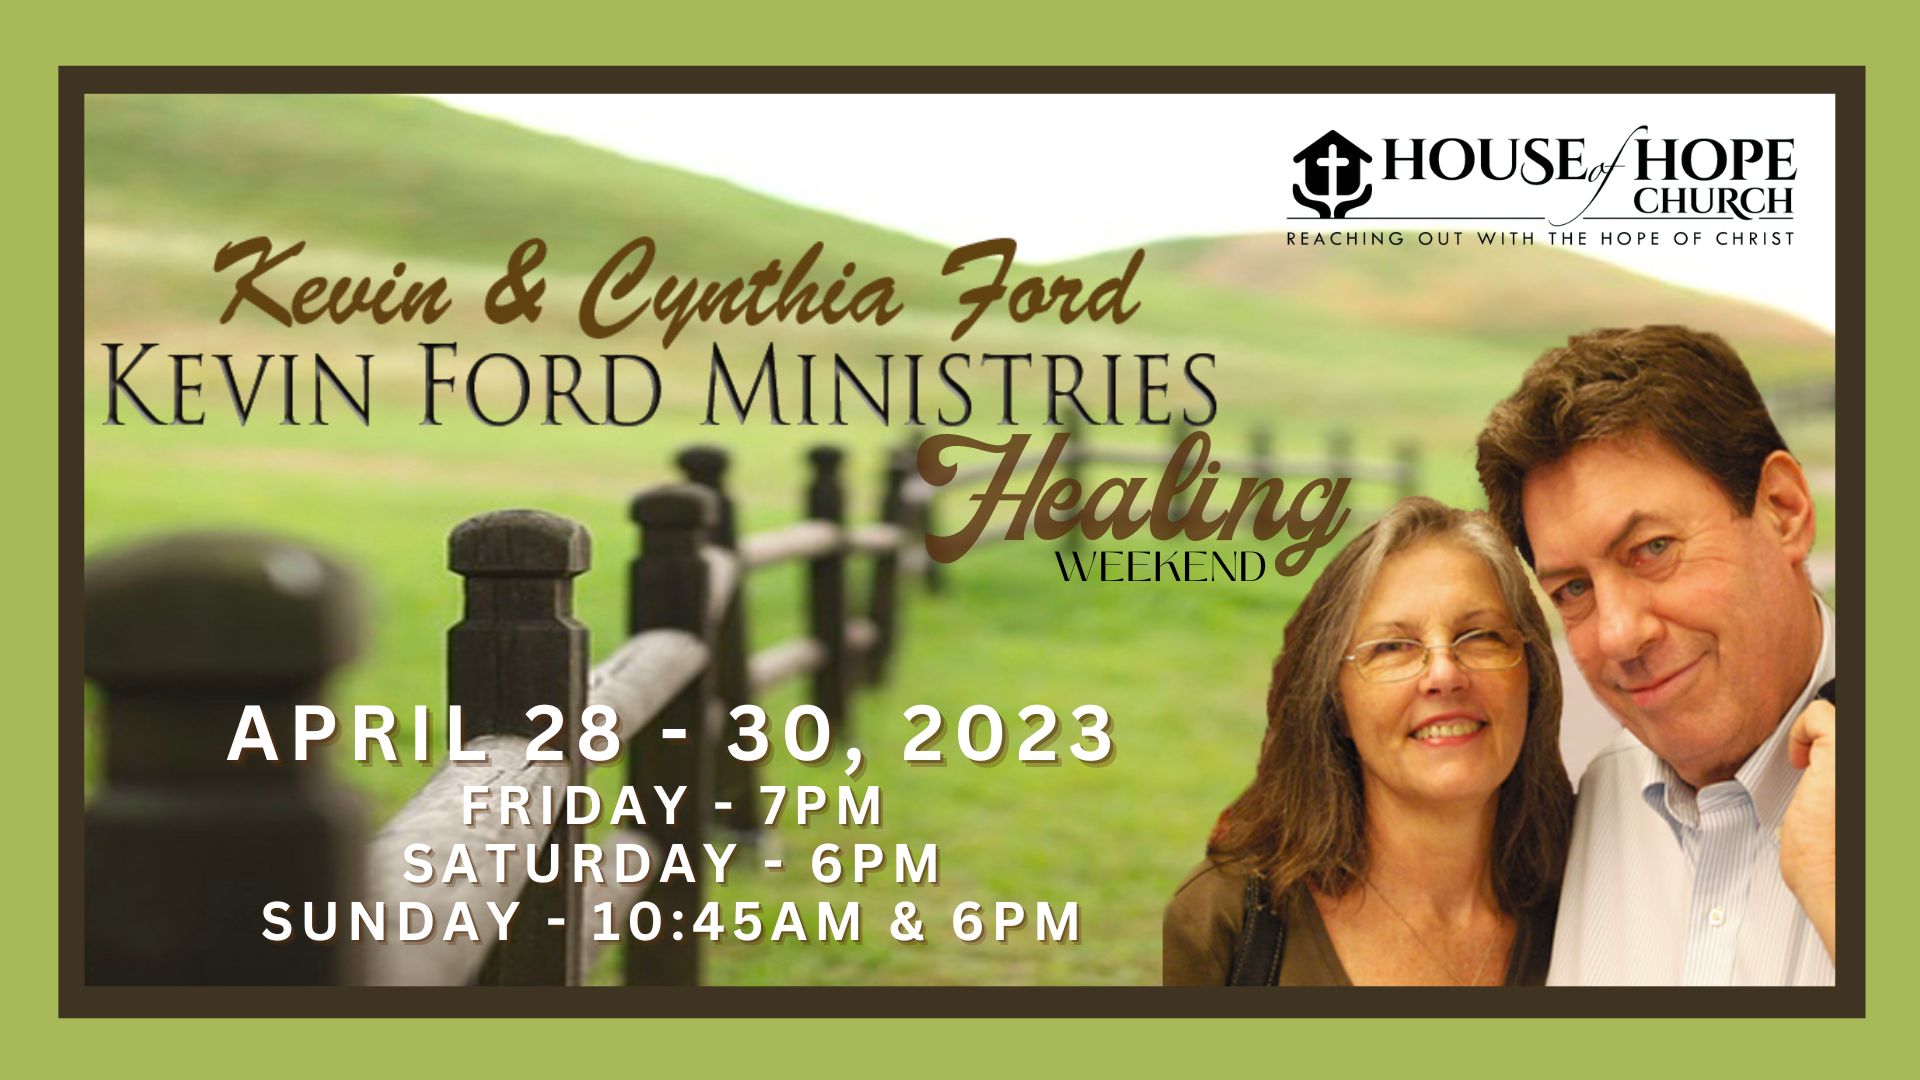 House of Hope – Healing weekend